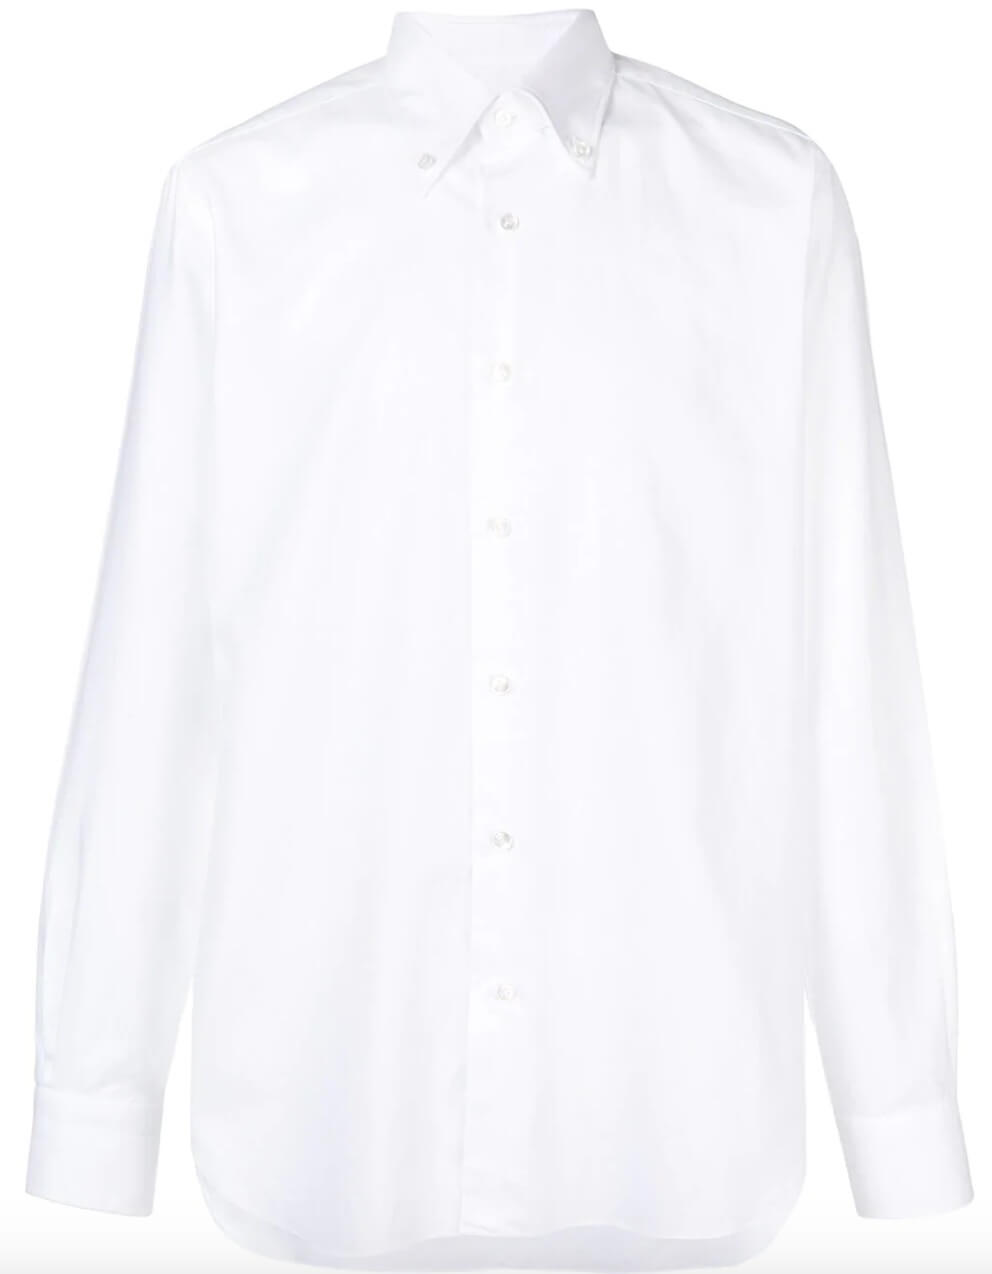 白シャツ コーデ特集！メンズ王道のトップスを巧みに着こなした最新のスナップ&おすすめアイテムを紹介 | メンズファッションメディア